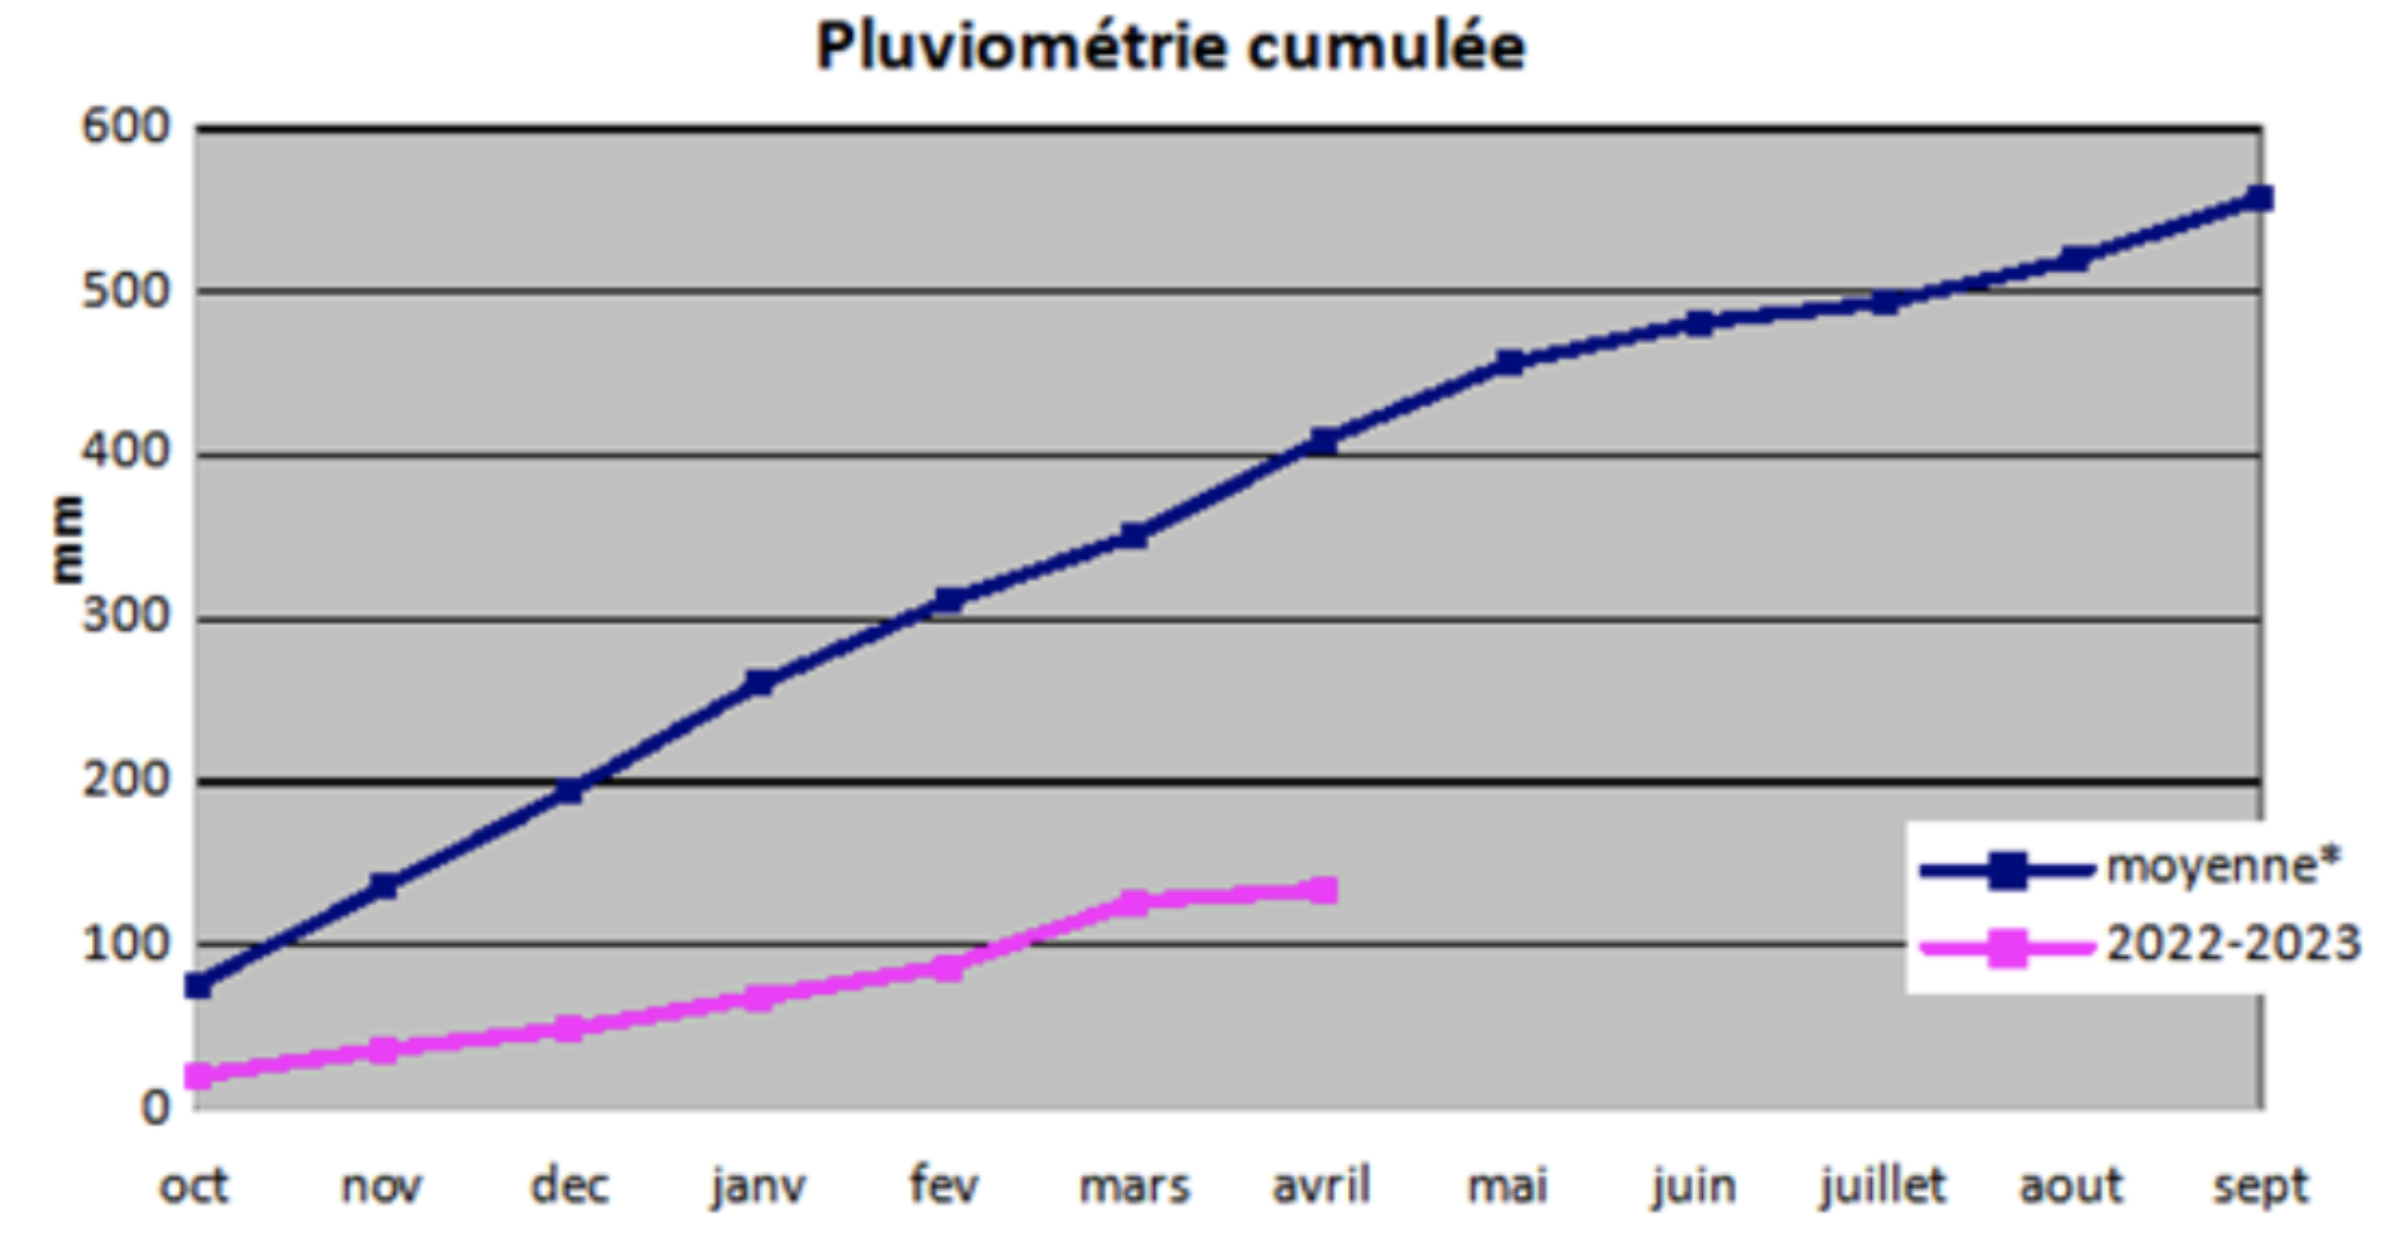 Graphique de pluviométrie cumulée dans les Pyrénées-Orientales, comparatif entre l'année 2022 2023 et la moyenne des années précédentes